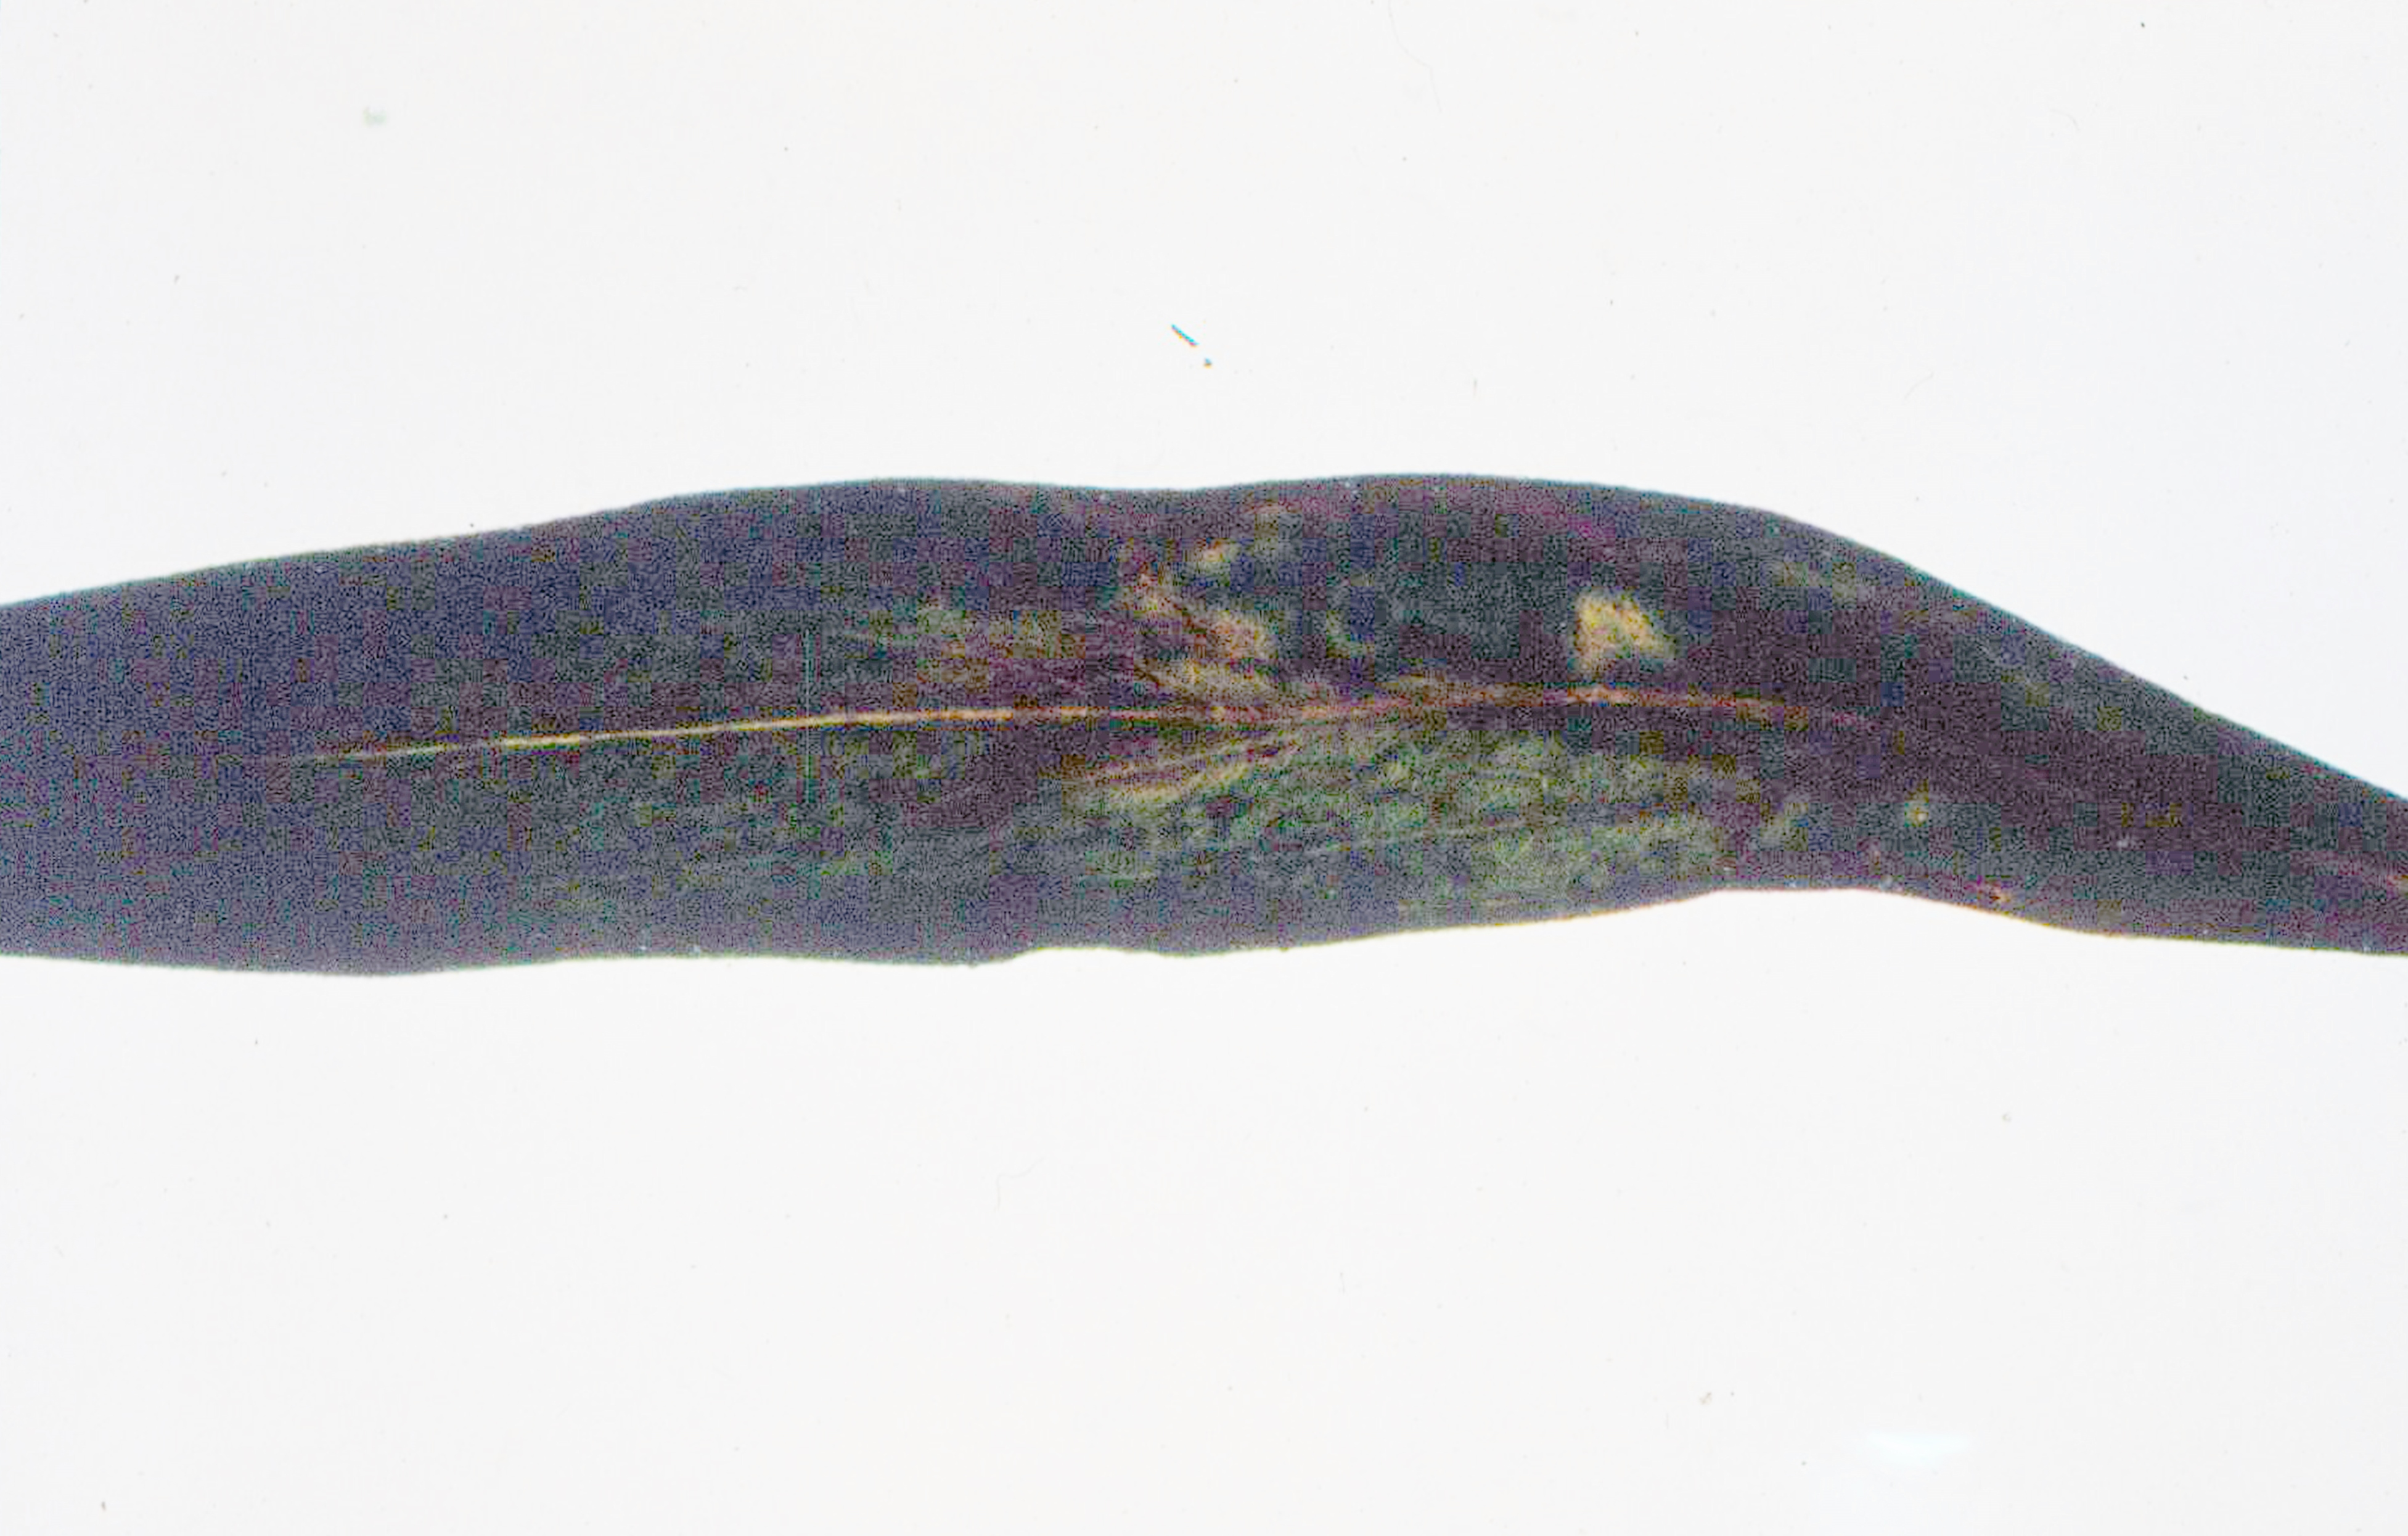 <p><b><p>Folha de <em>Seemannia sylvatica</em> (semânia) naturalmente infectada por CMV apresentando manchas cloróticas e necróticas.</p></b></p><p>Autor: Sérgio Viana</p>